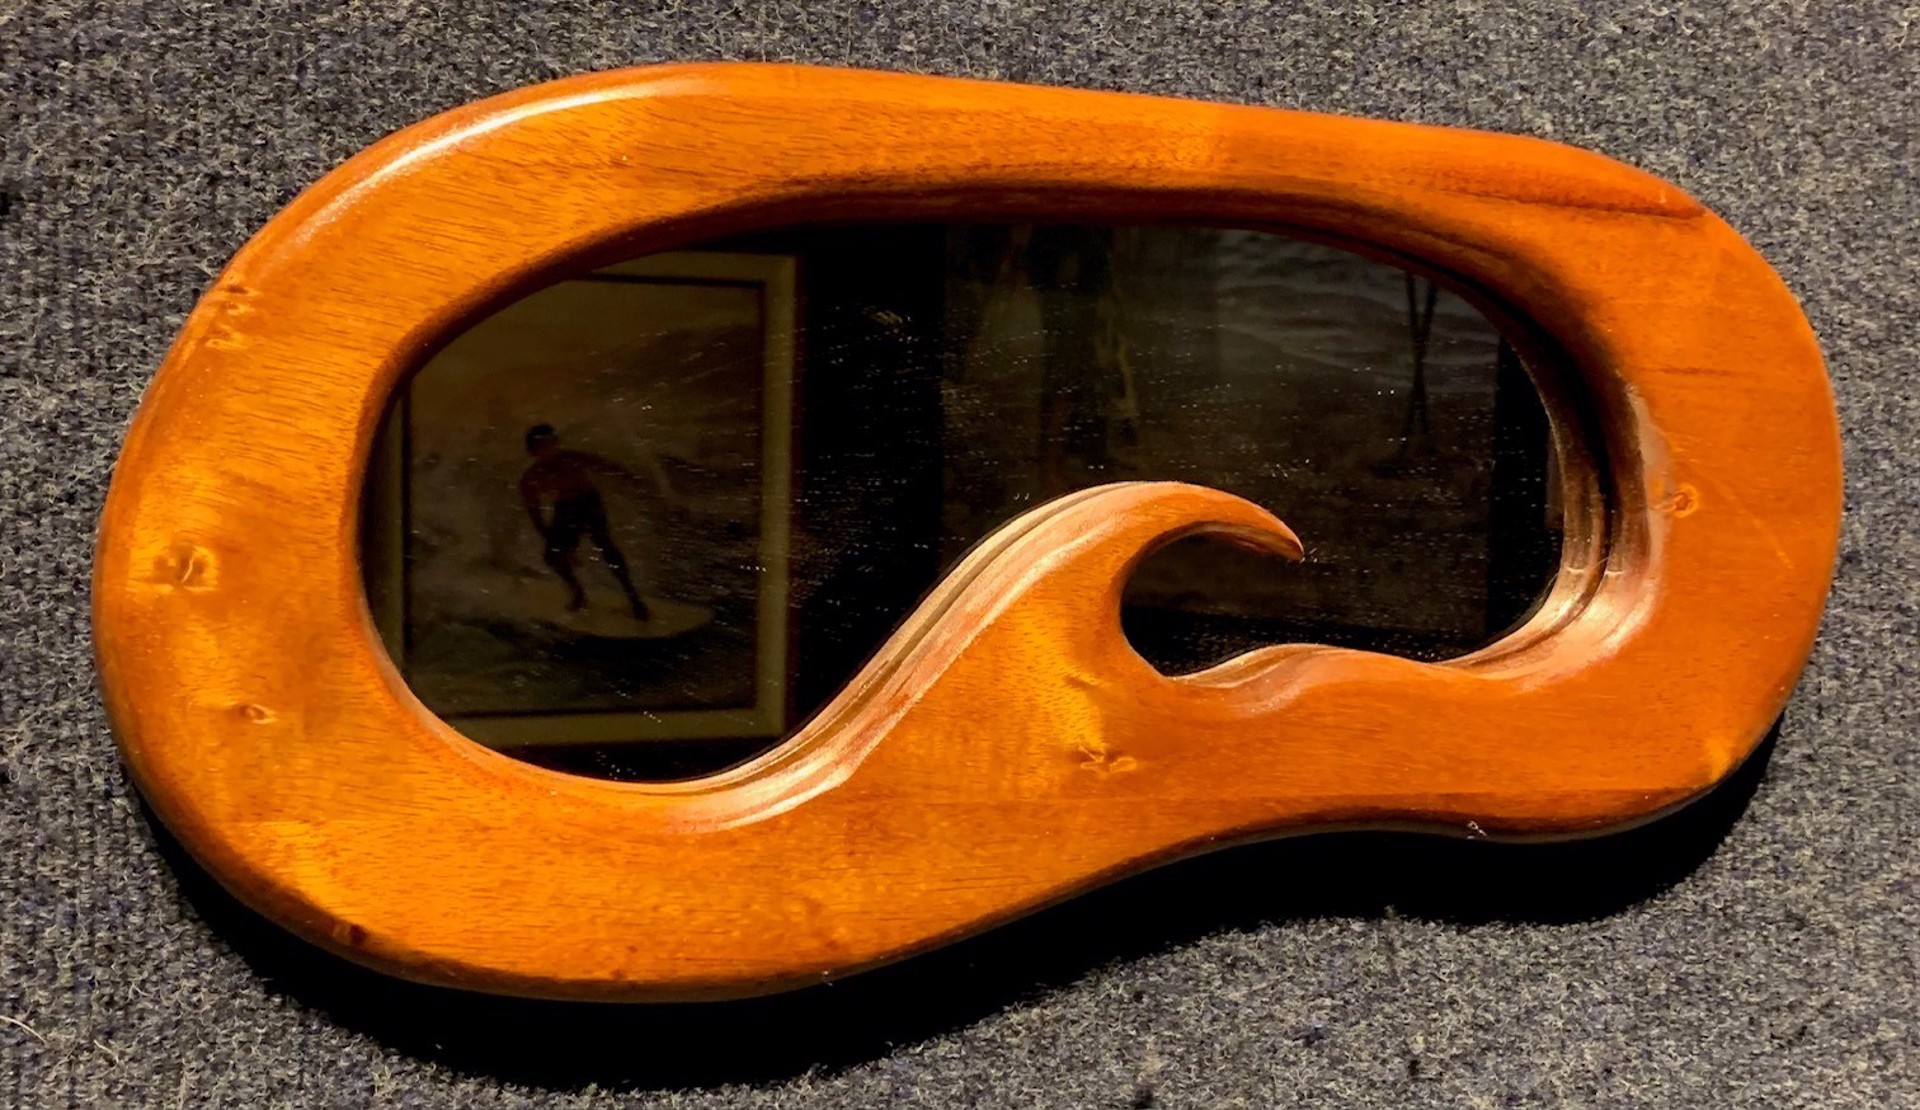 Koa Wood Mirror #0052 by Nadia Fairlamb